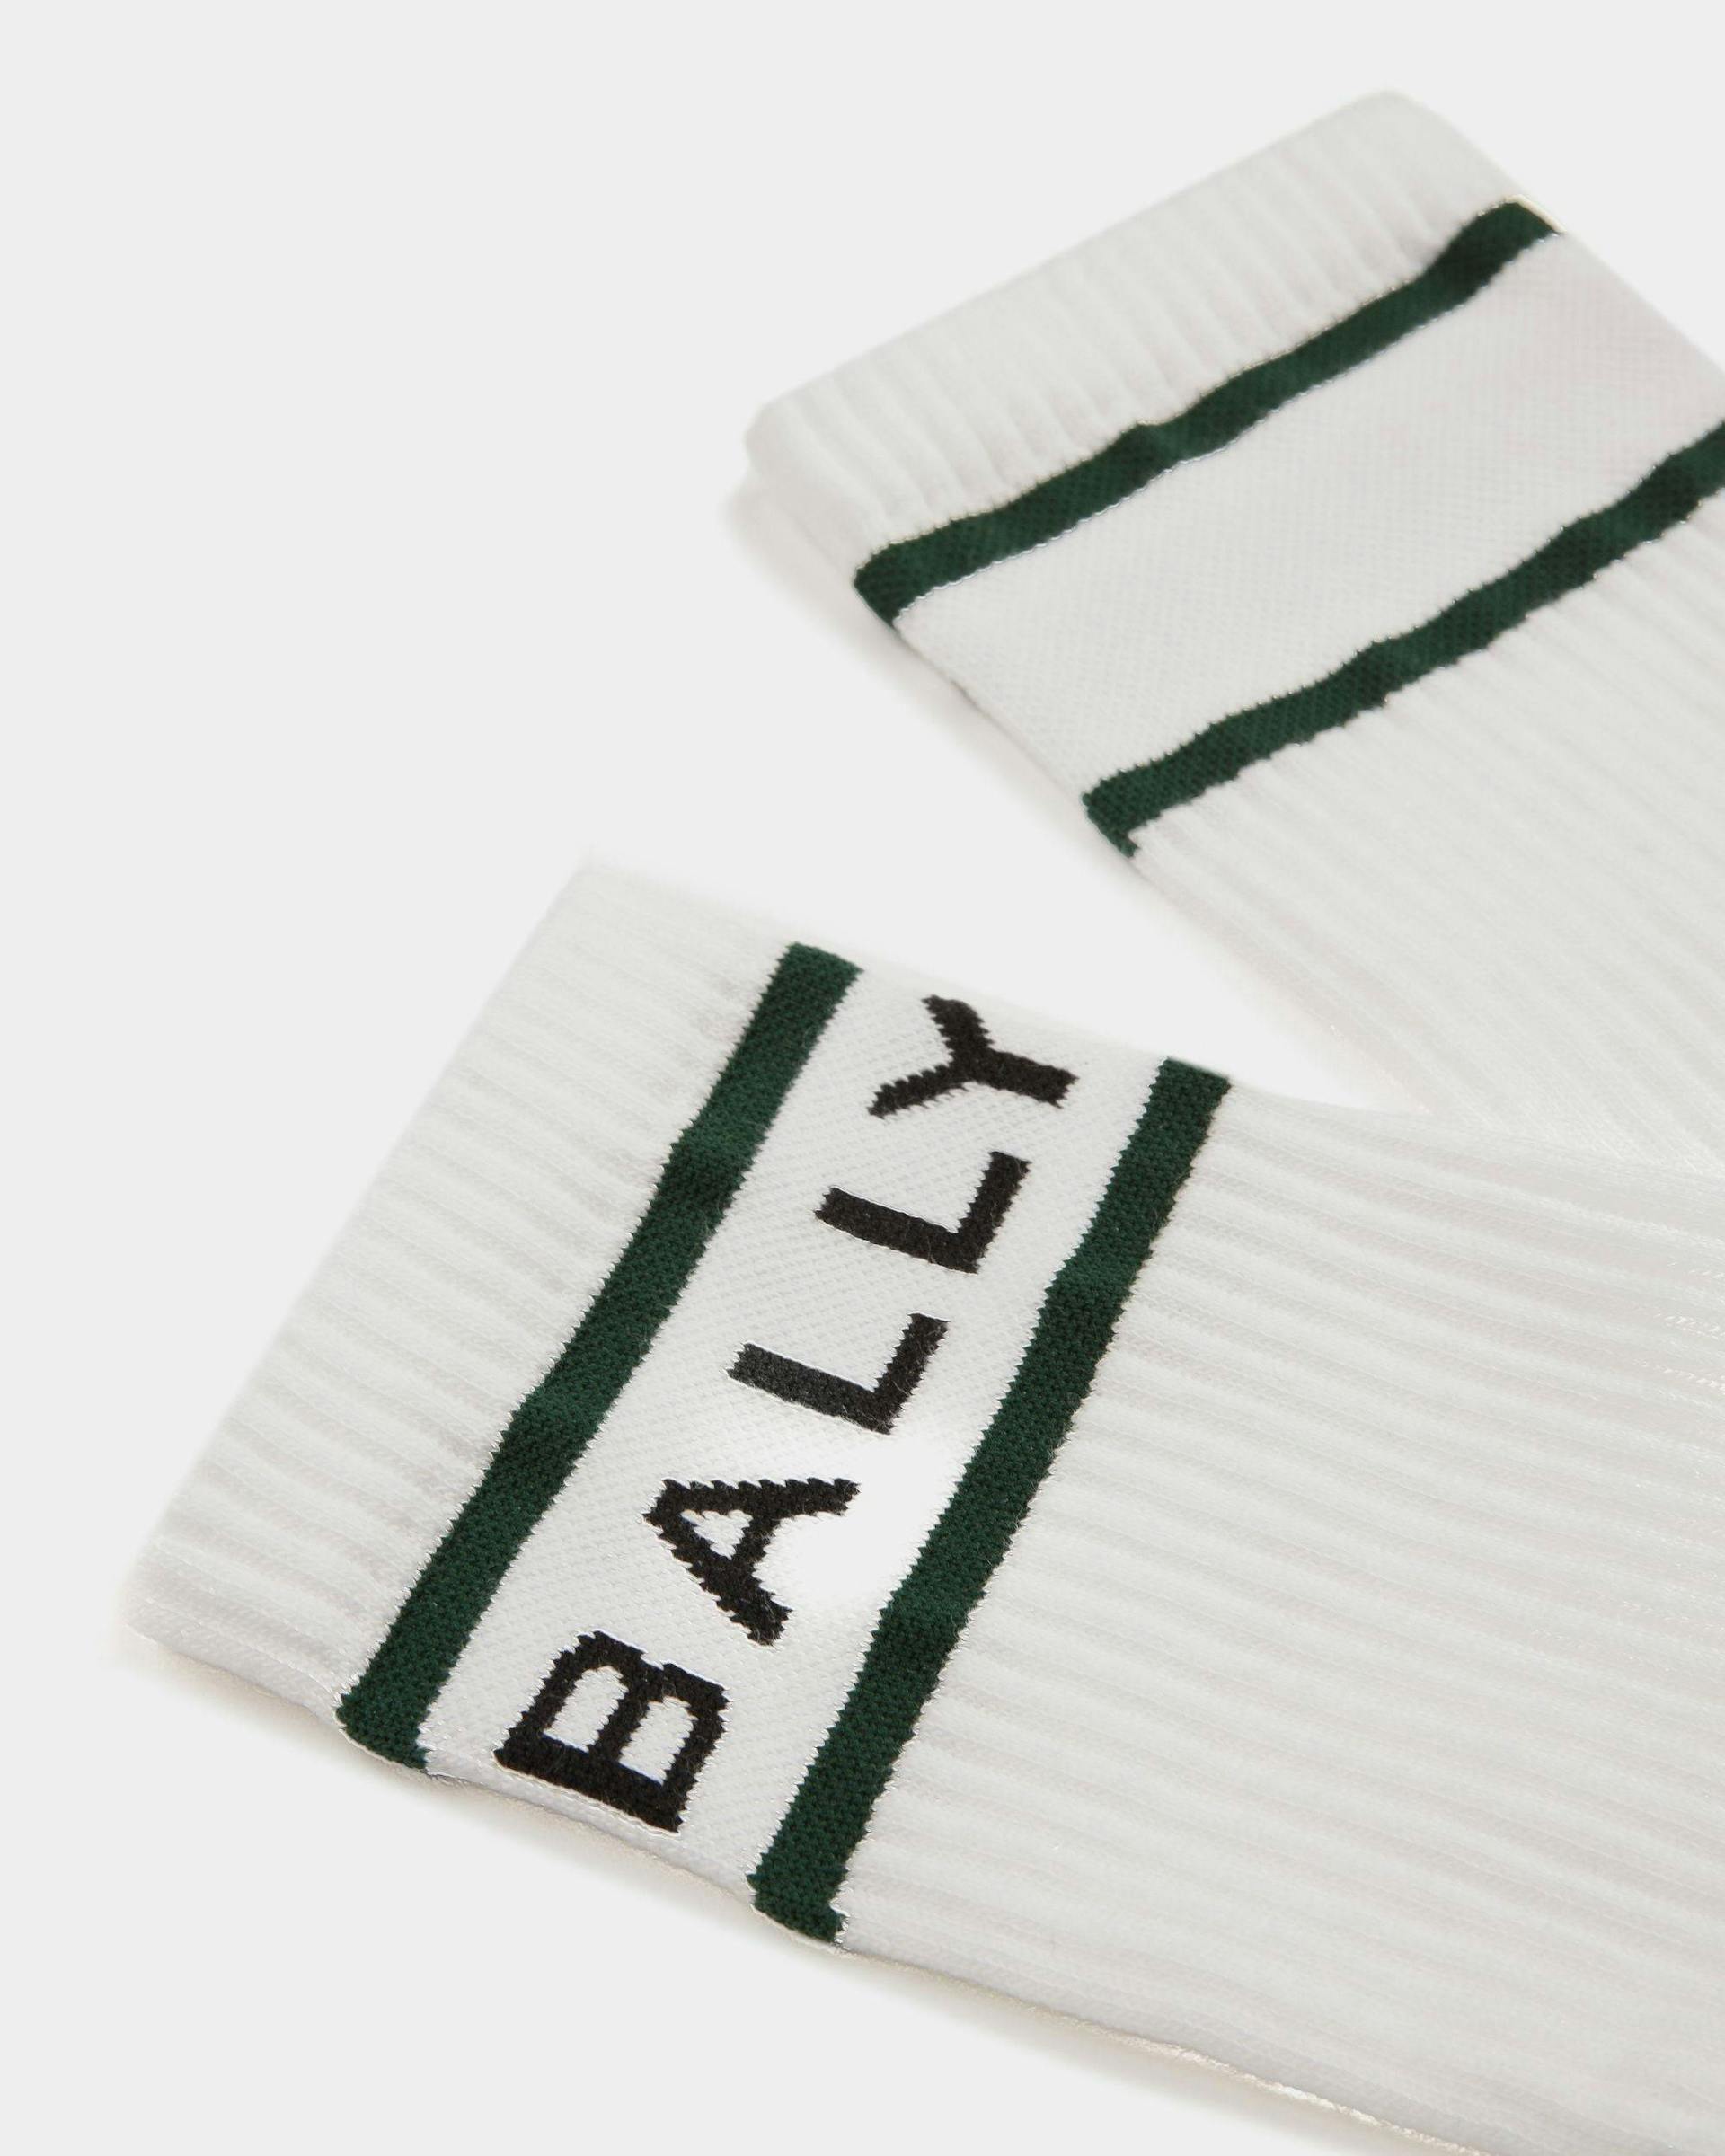 Bally Stripe Socken In Weiß und Grün - Herren - Bally - 02